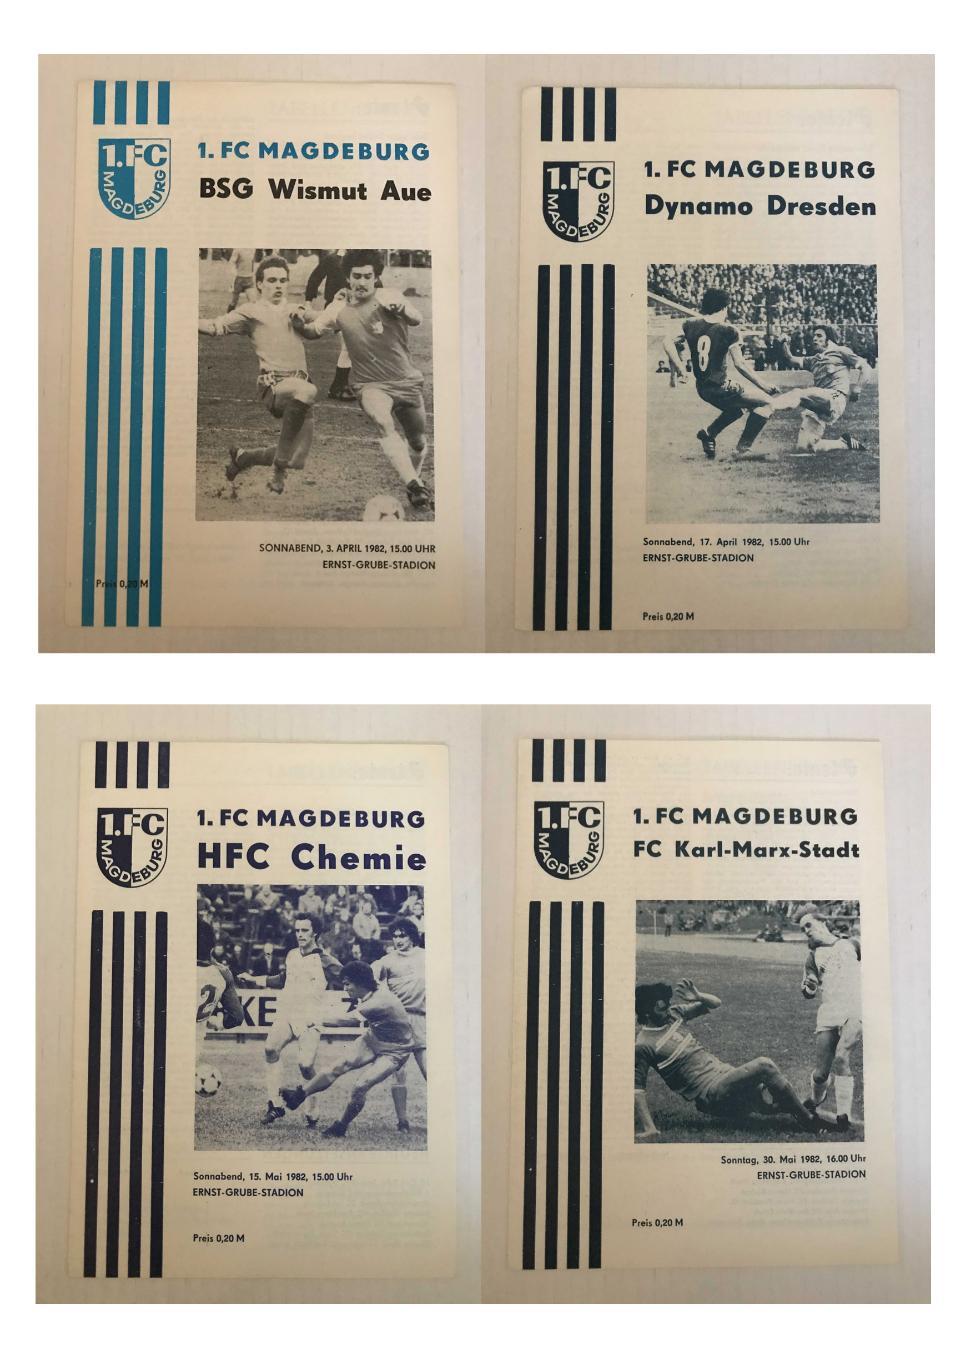 1.ФК Магдебург Оберлига ГДР 1981/82 домашний комплект 2